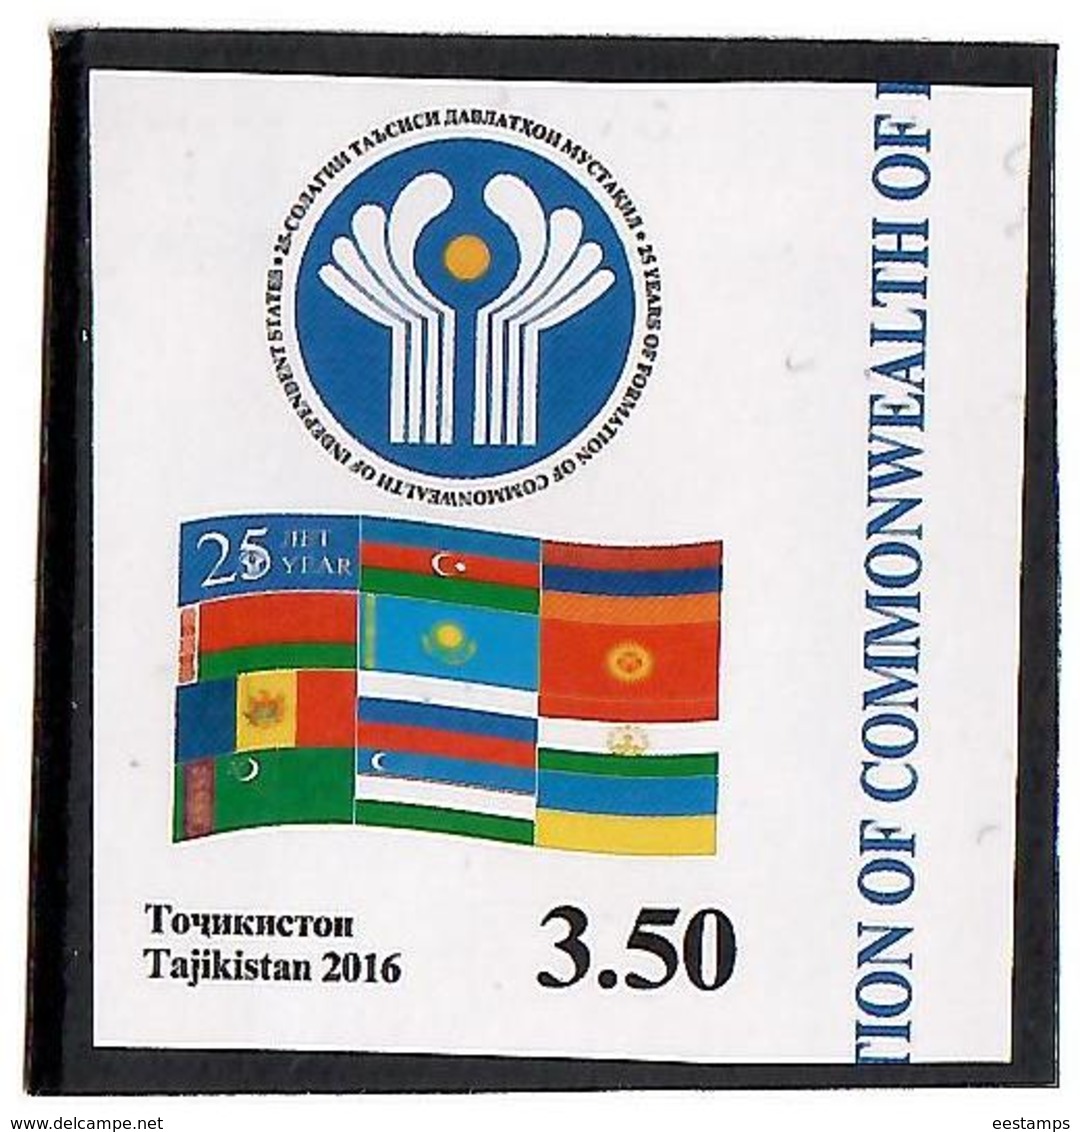 Tajikistan.2016 CIS - 25 Years(Flag).Imperf.1v: 3.50  Michel # 735b - Tajikistan